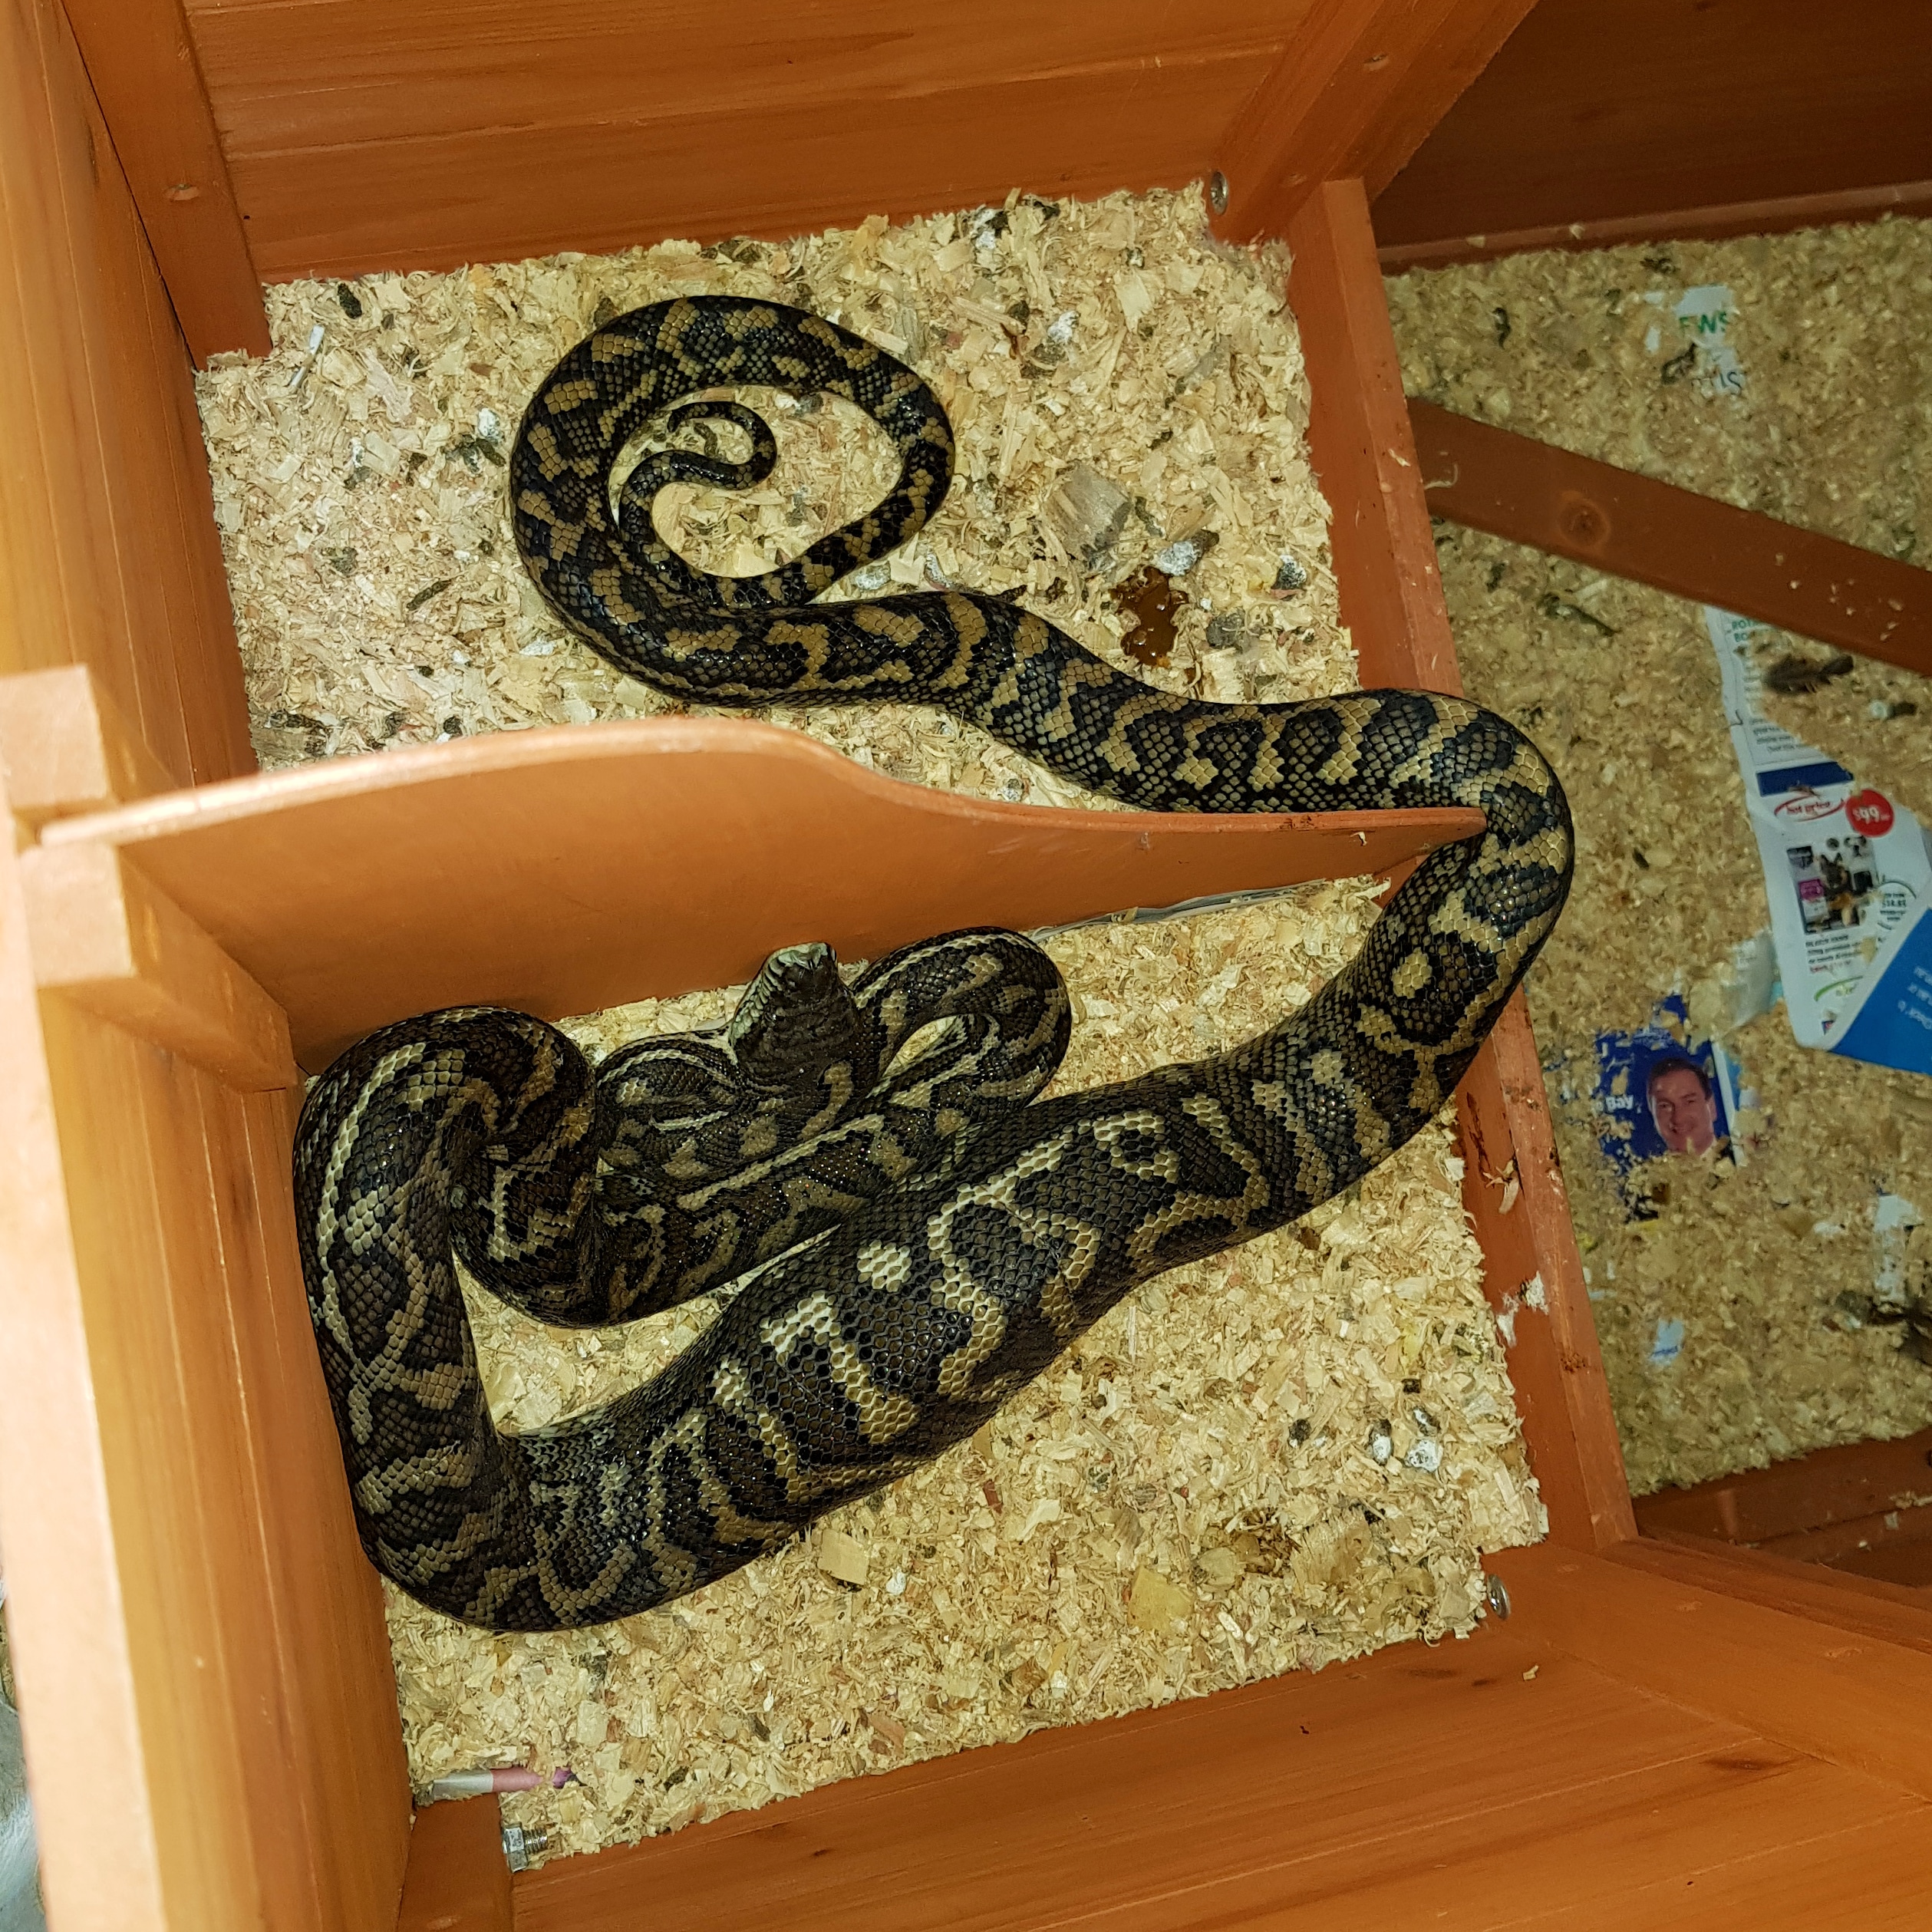 snake inside pet cage